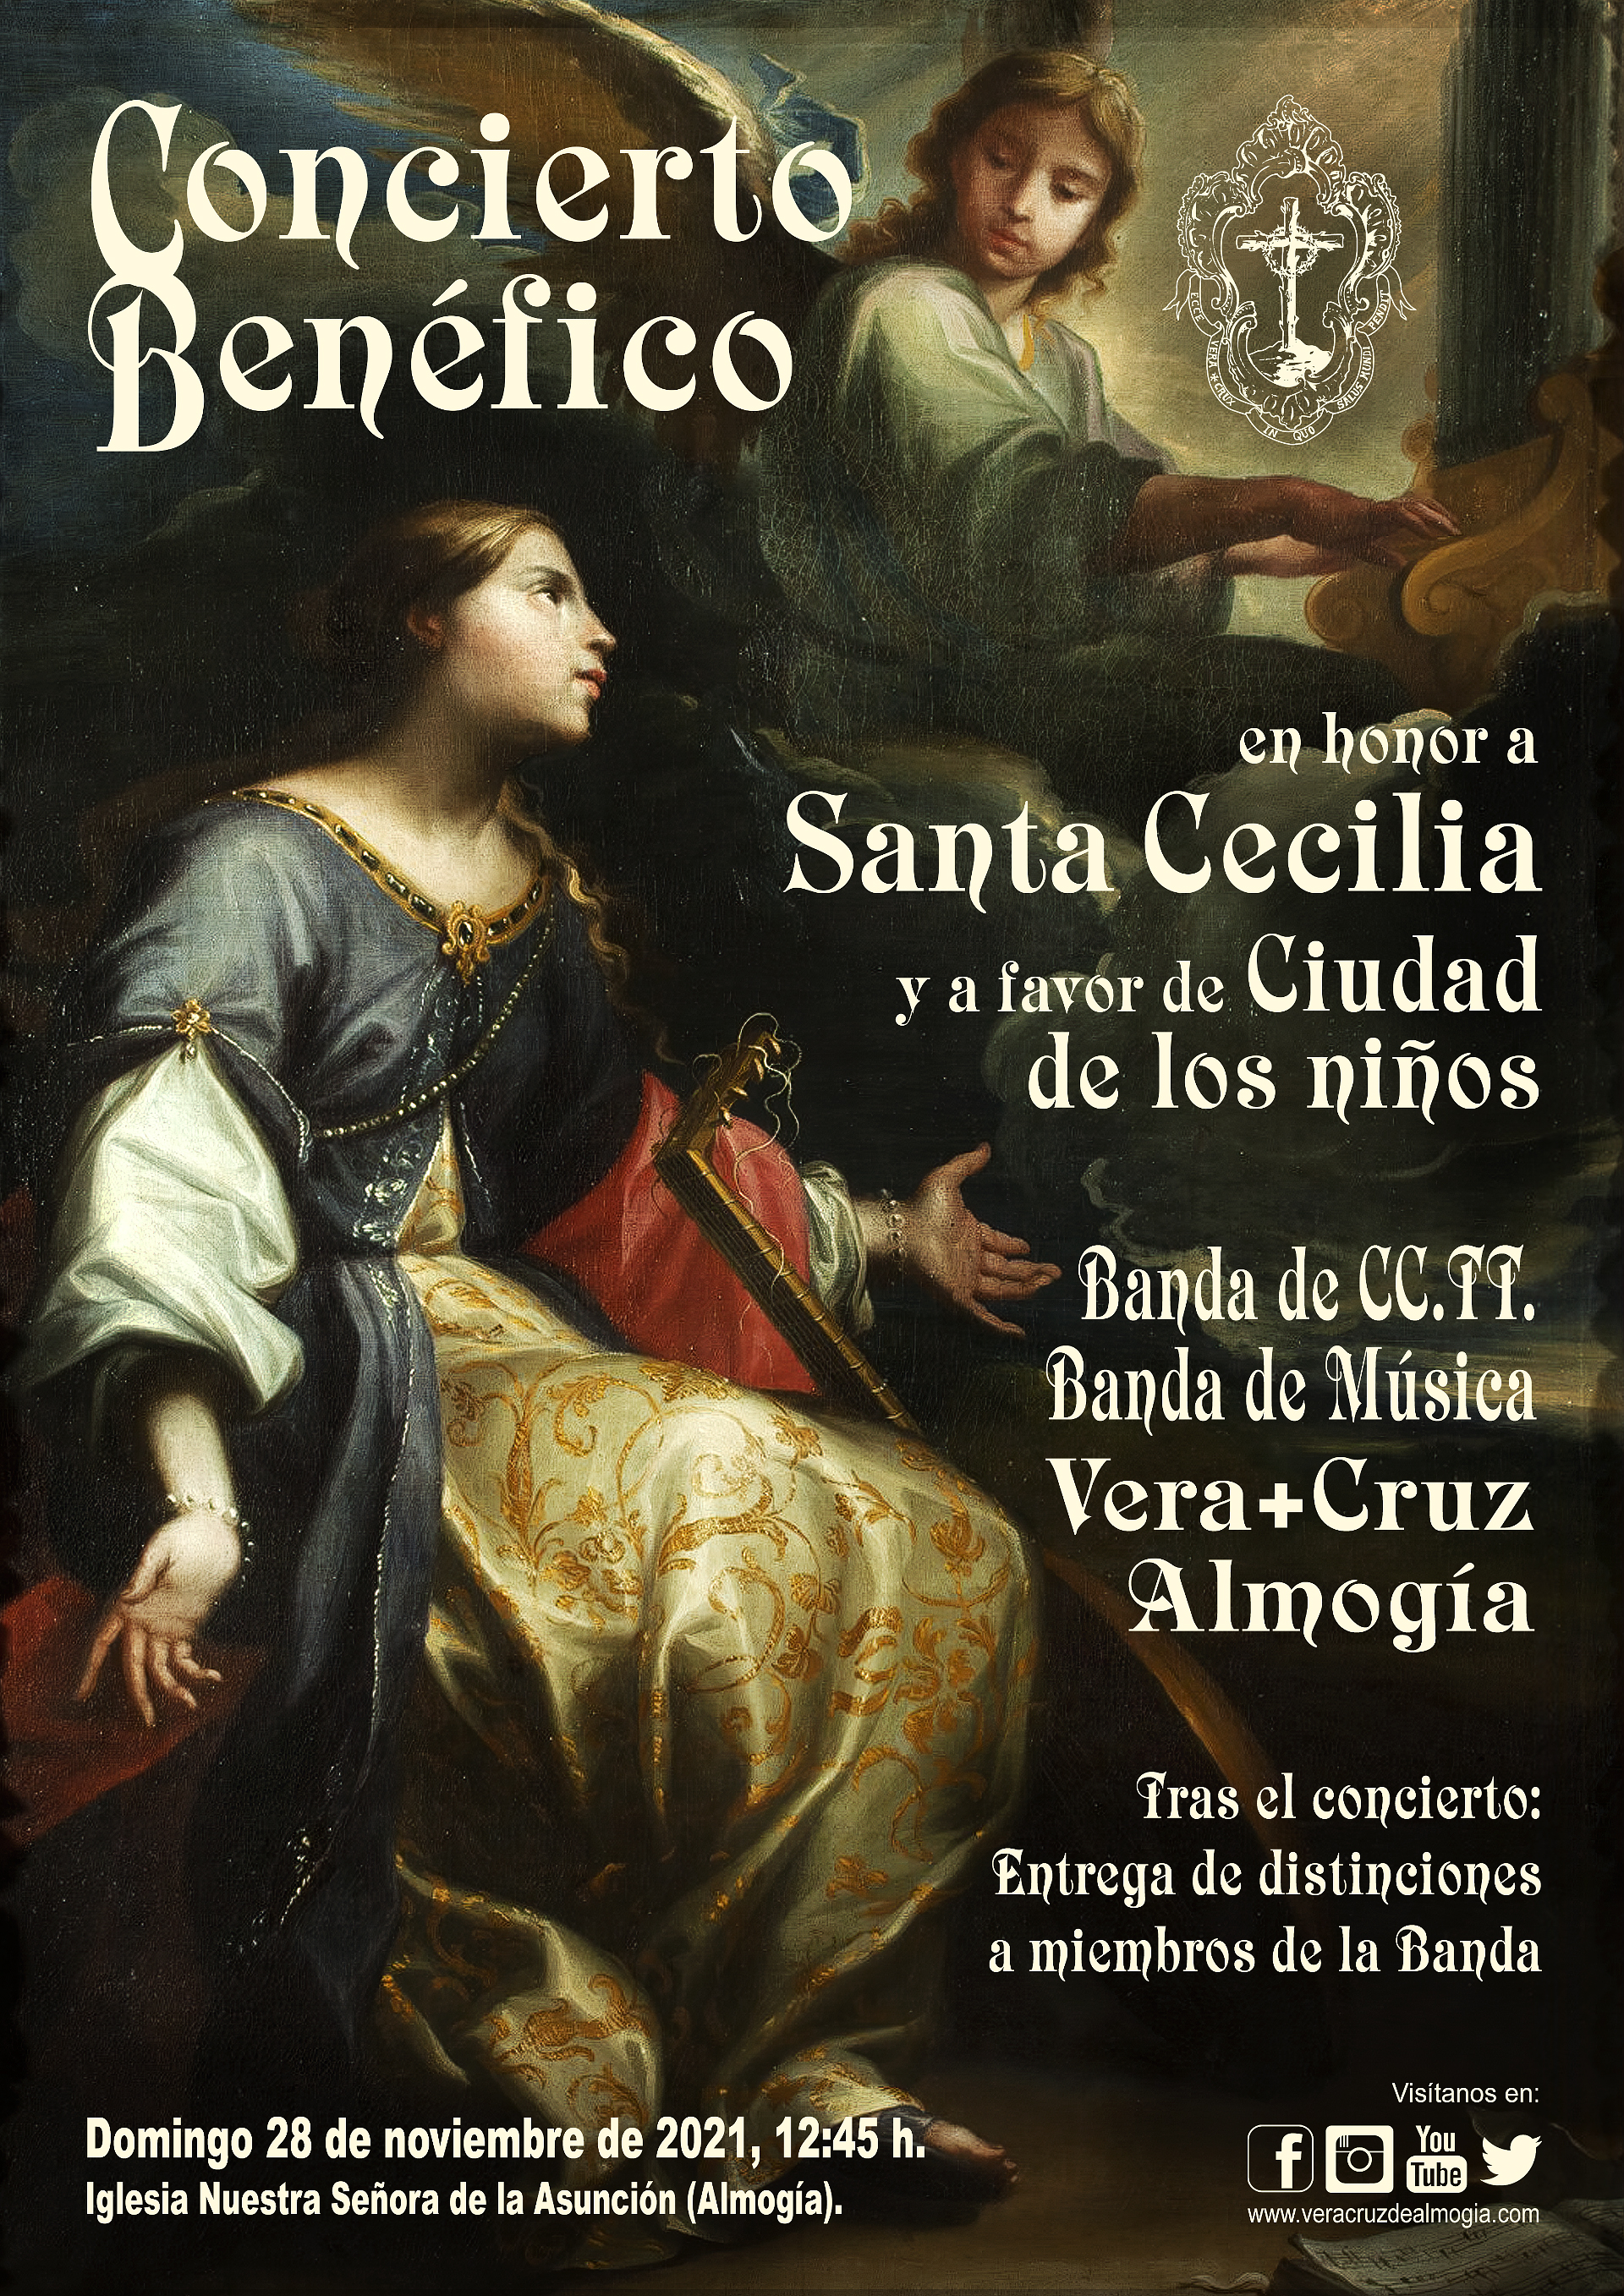 Cartel Concierto Benéfico en honor a Santa cecilia 2021